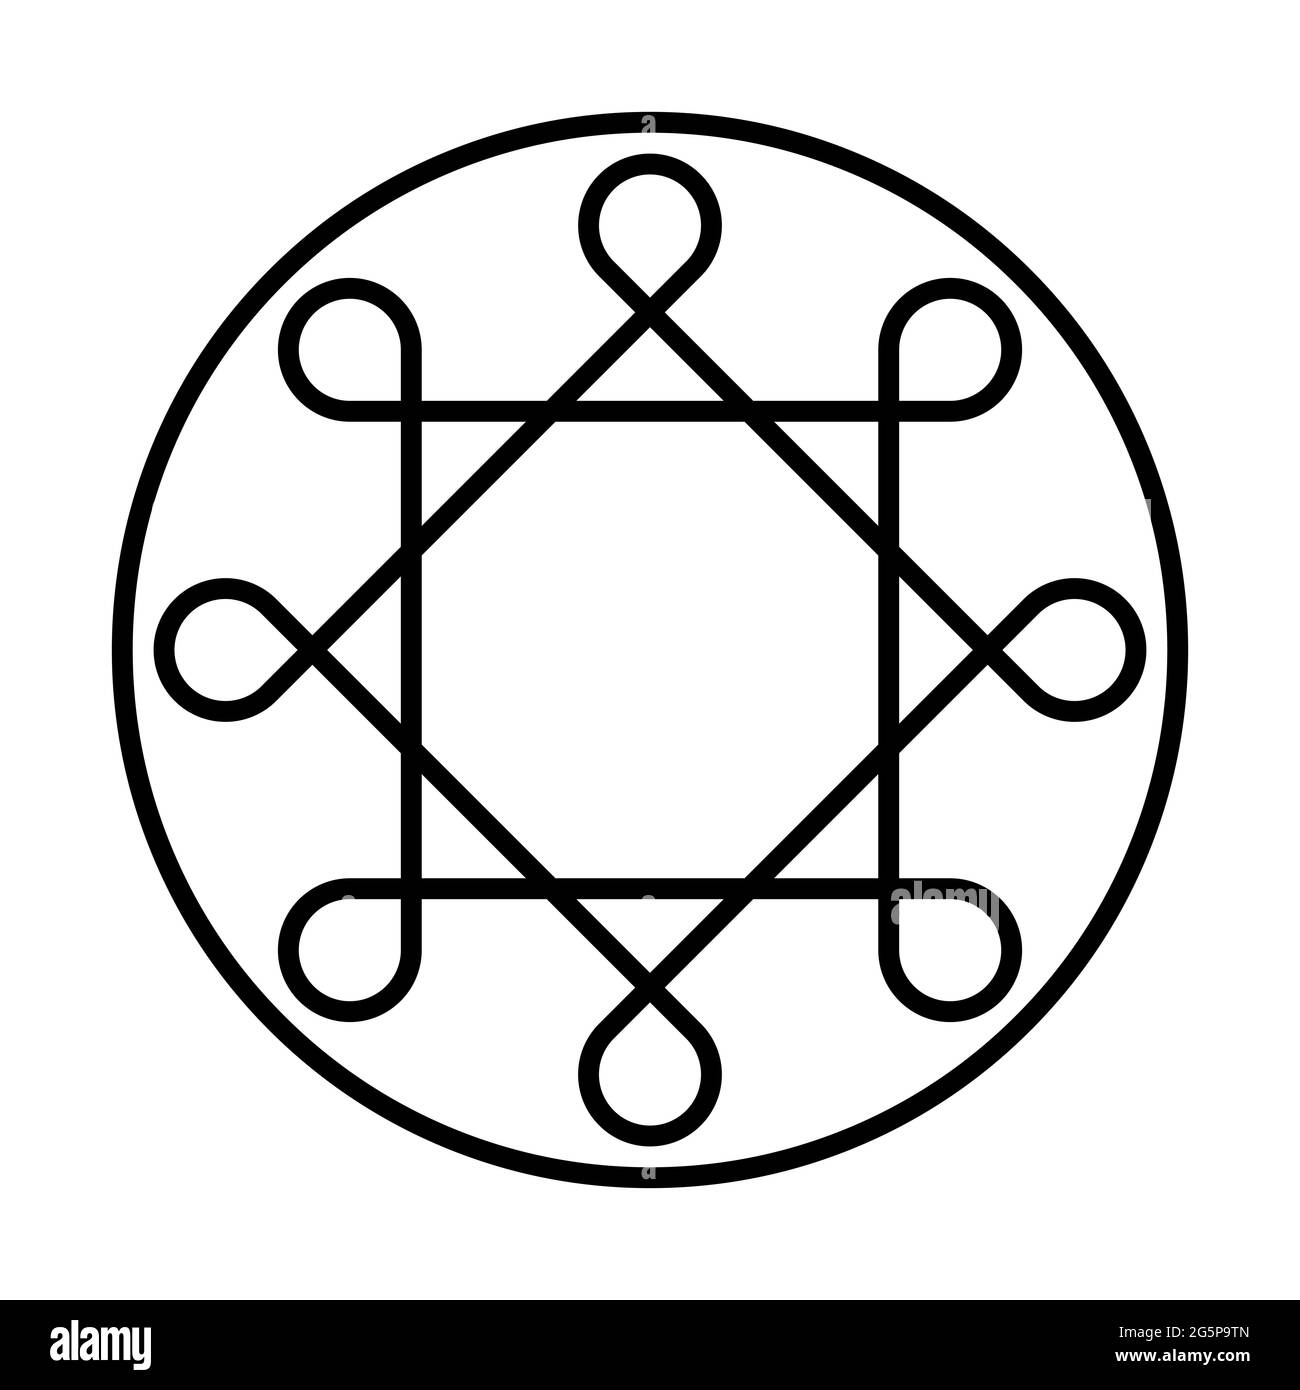 Ring von Solomon. Zwei überlappende Quadrate mit acht abgerundeten Ecken, innerhalb eines Kreisrahmens. Tausende von Jahren altes Symbol. Stockfoto